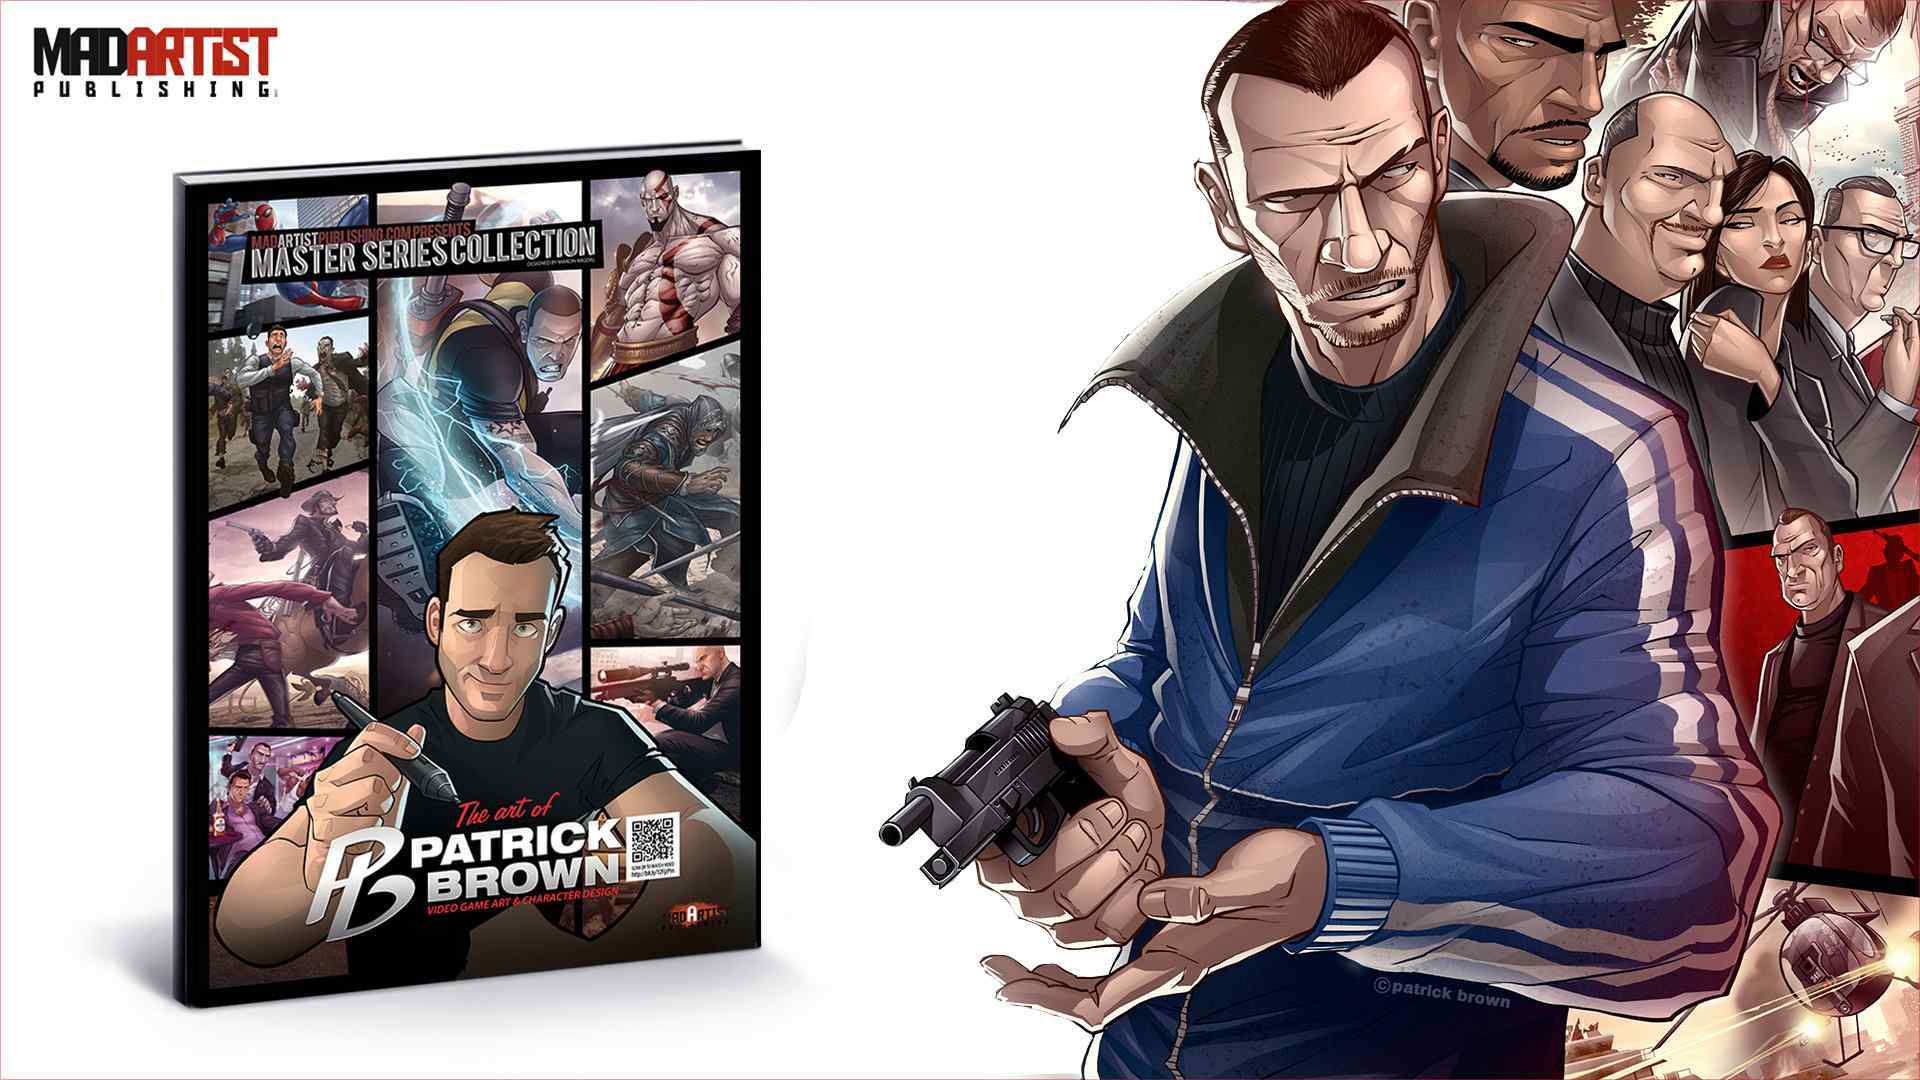 Book - Art of Patrick Brown: Video Game Art & Character Design 